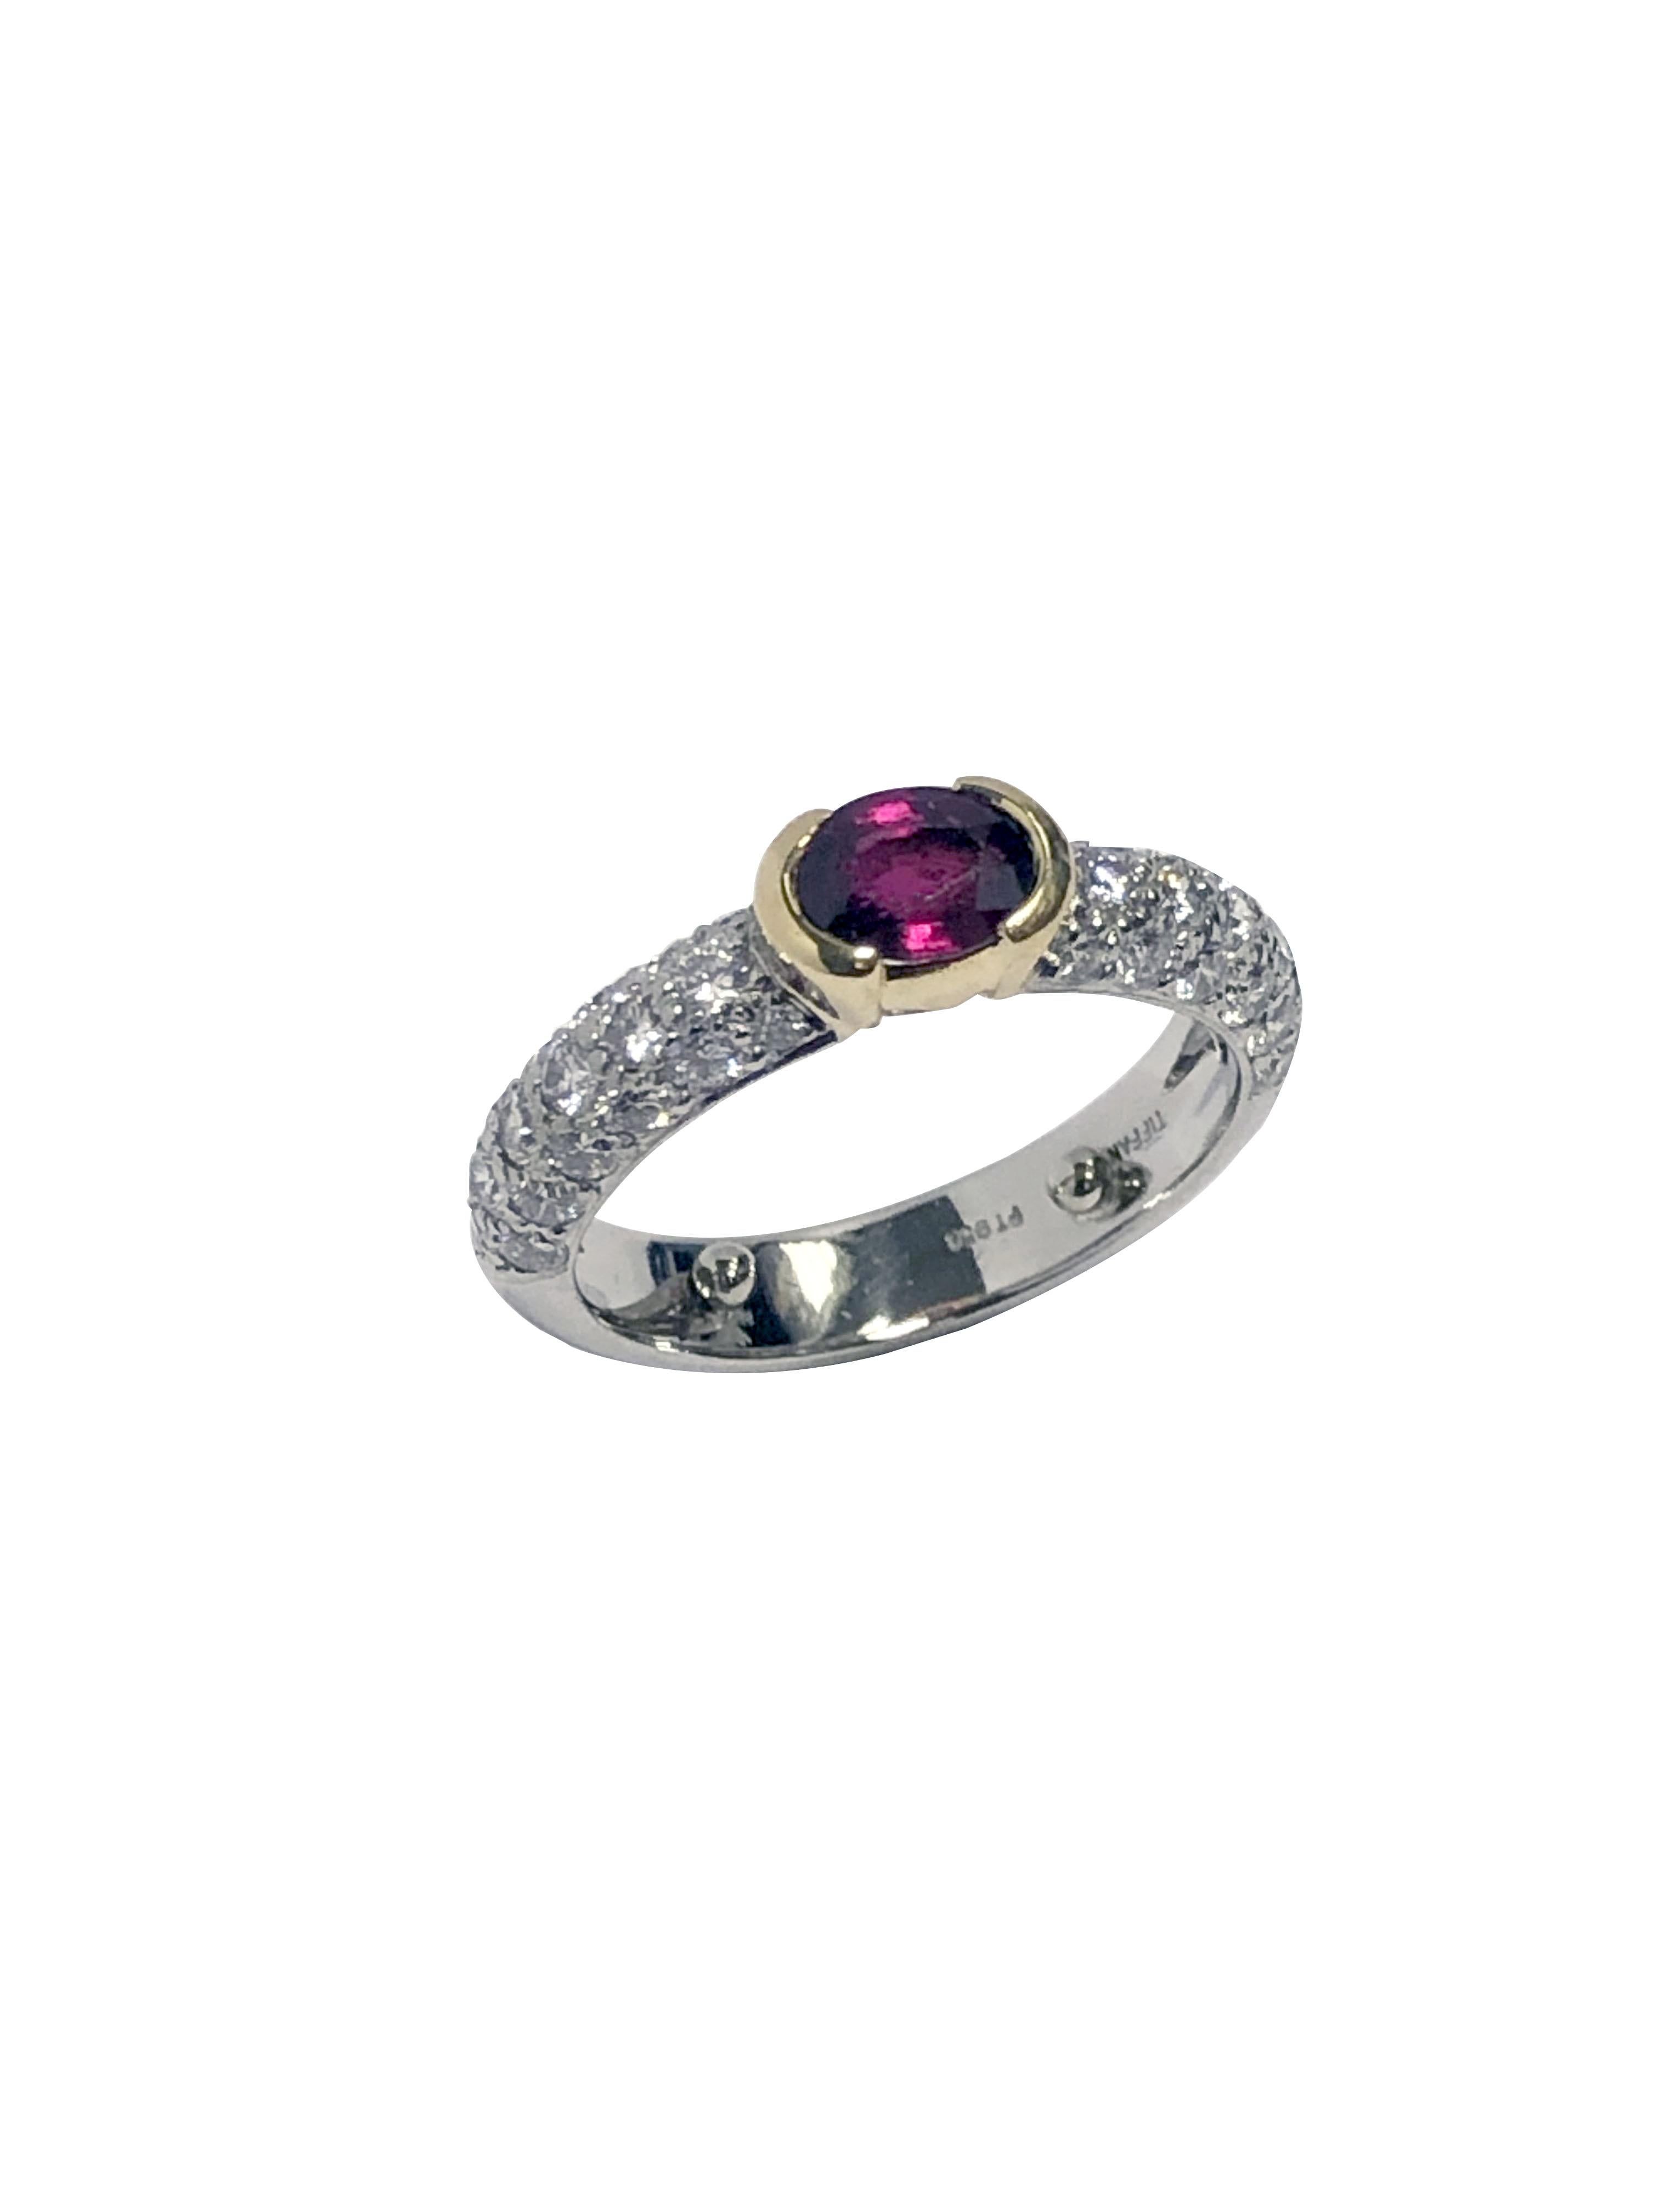 CIRCA 1980er Jahre Tiffany & Company Platinum Ring, ein 4 M.M breiten Band Ring, der Pave mit runden Diamanten im Brillantschliff für 3/4 des Bandes und einem ungefähren Gewicht von 1 Karat gesetzt ist. Zentral in einem gelben Gold Kopf gesetzt ist